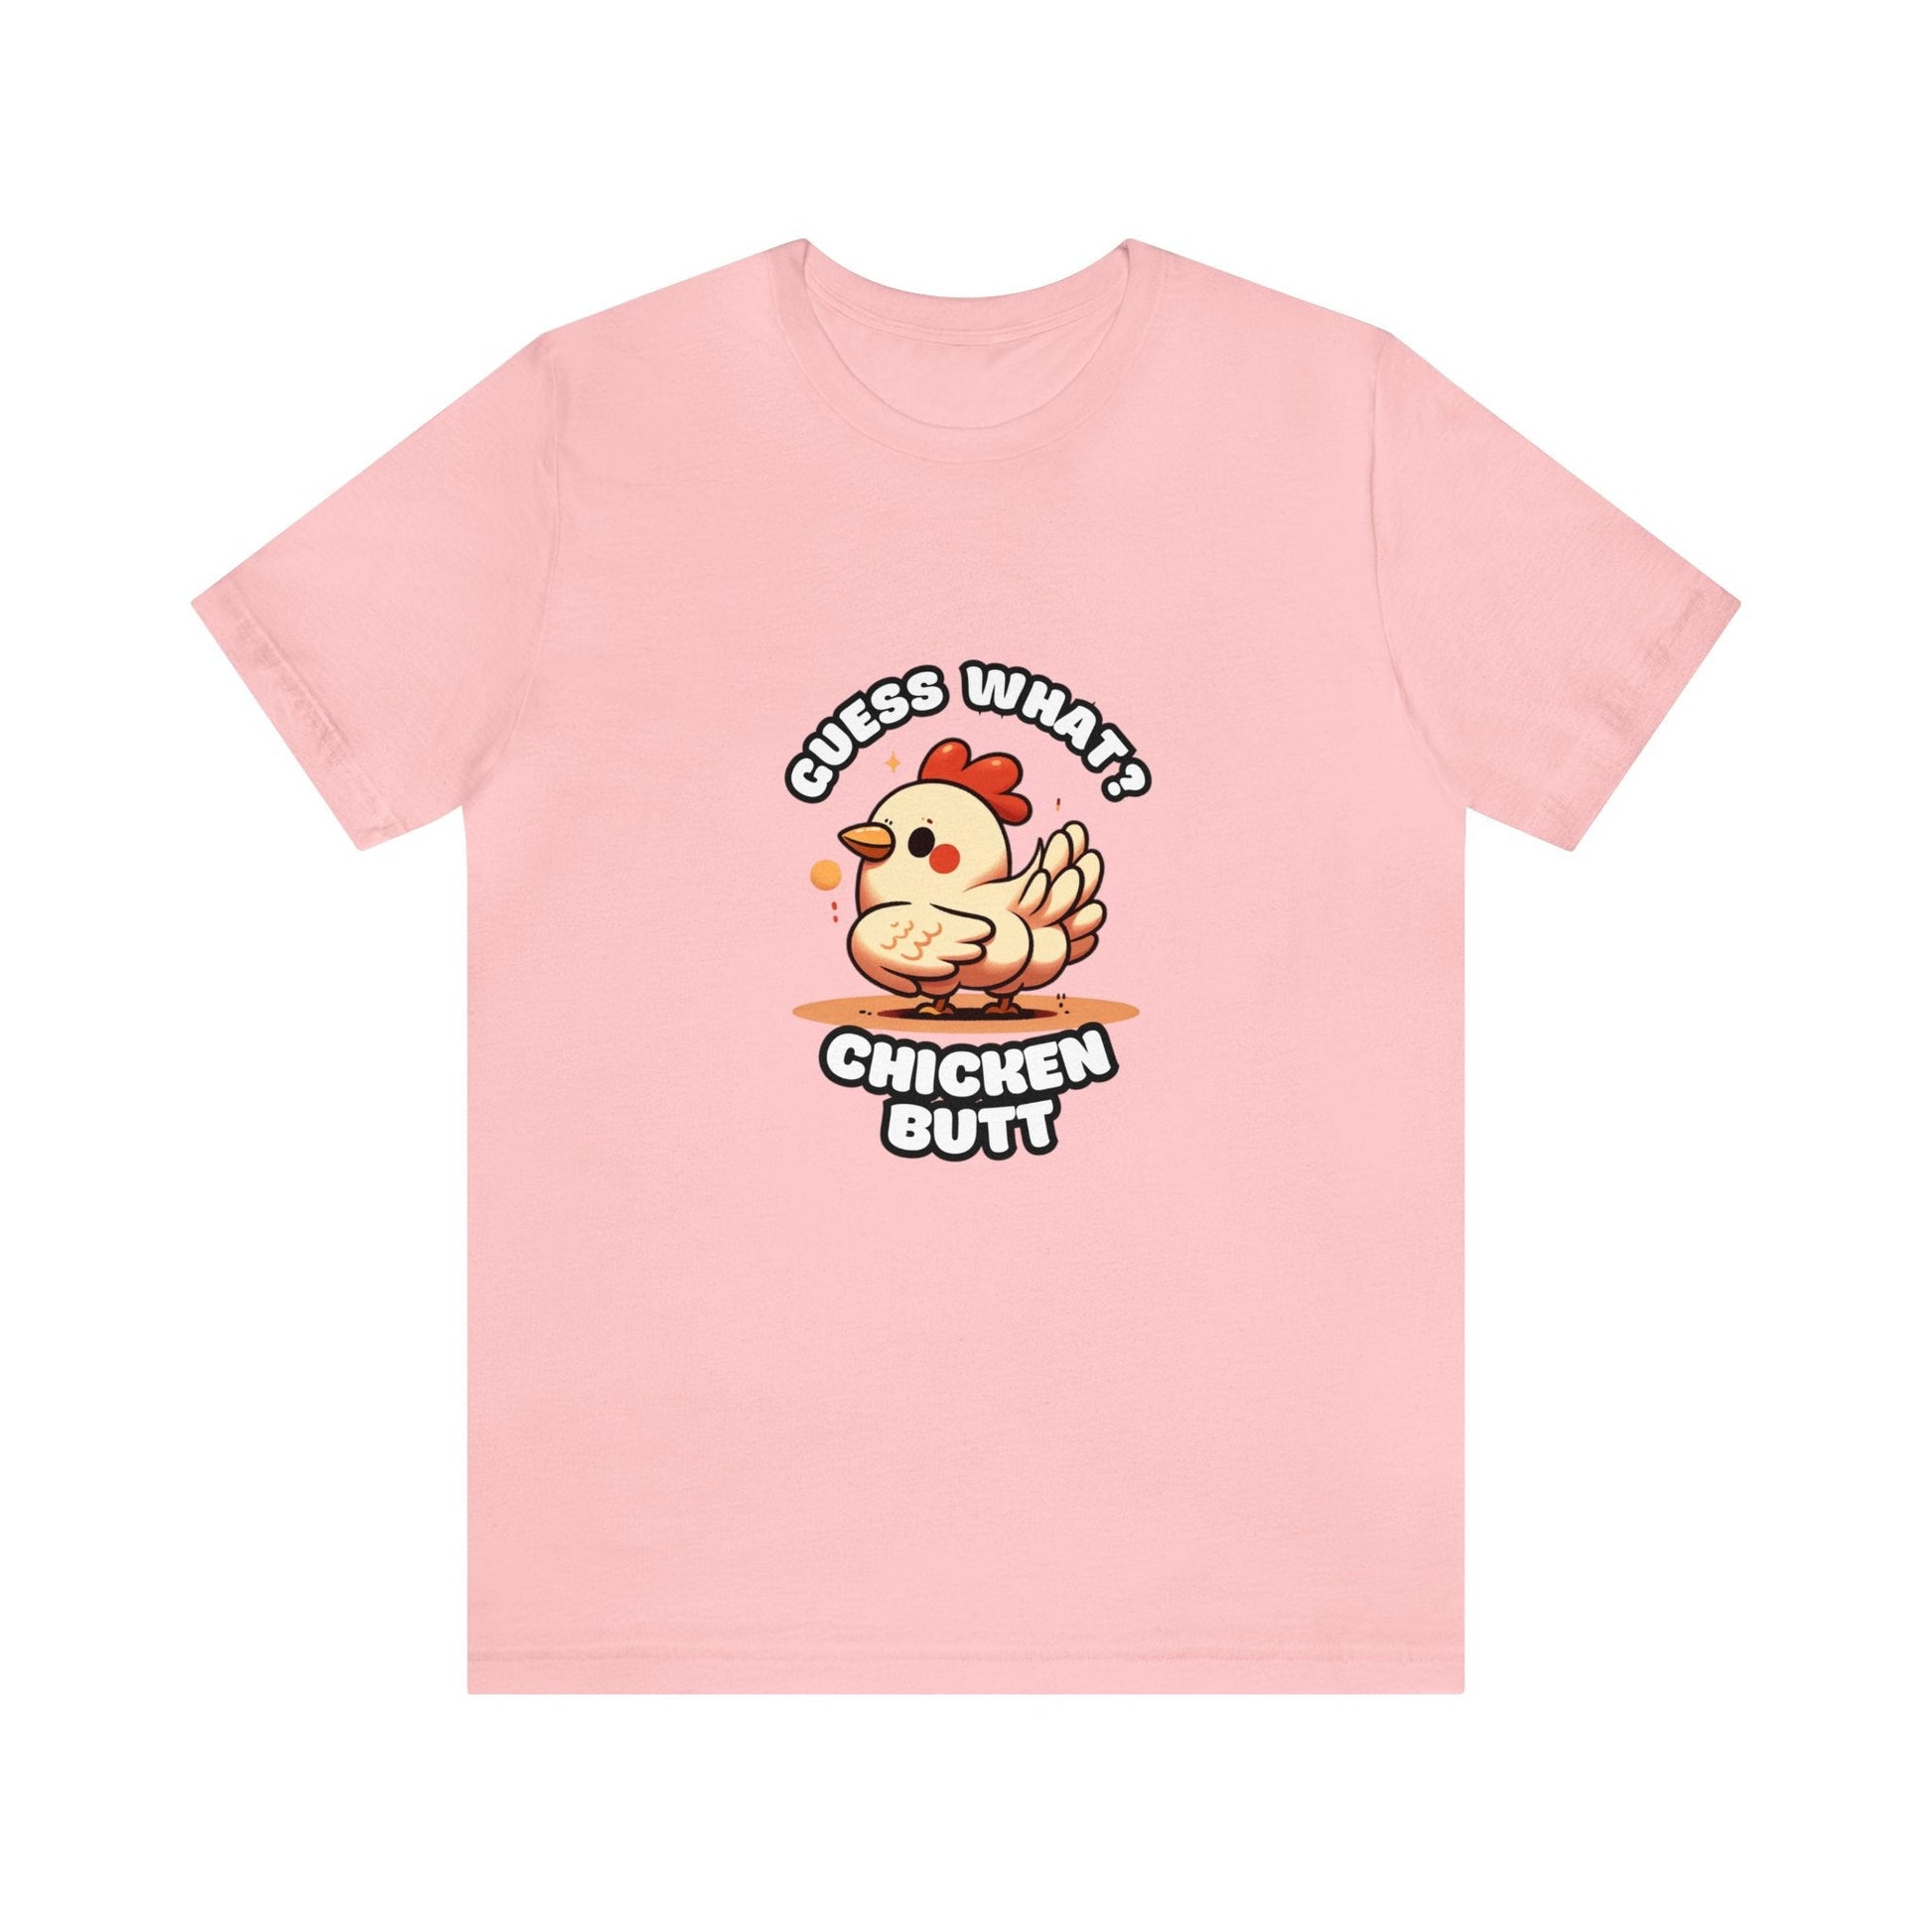 Guess What? Chicken Butt - Chicken T-shirt Pink / XS